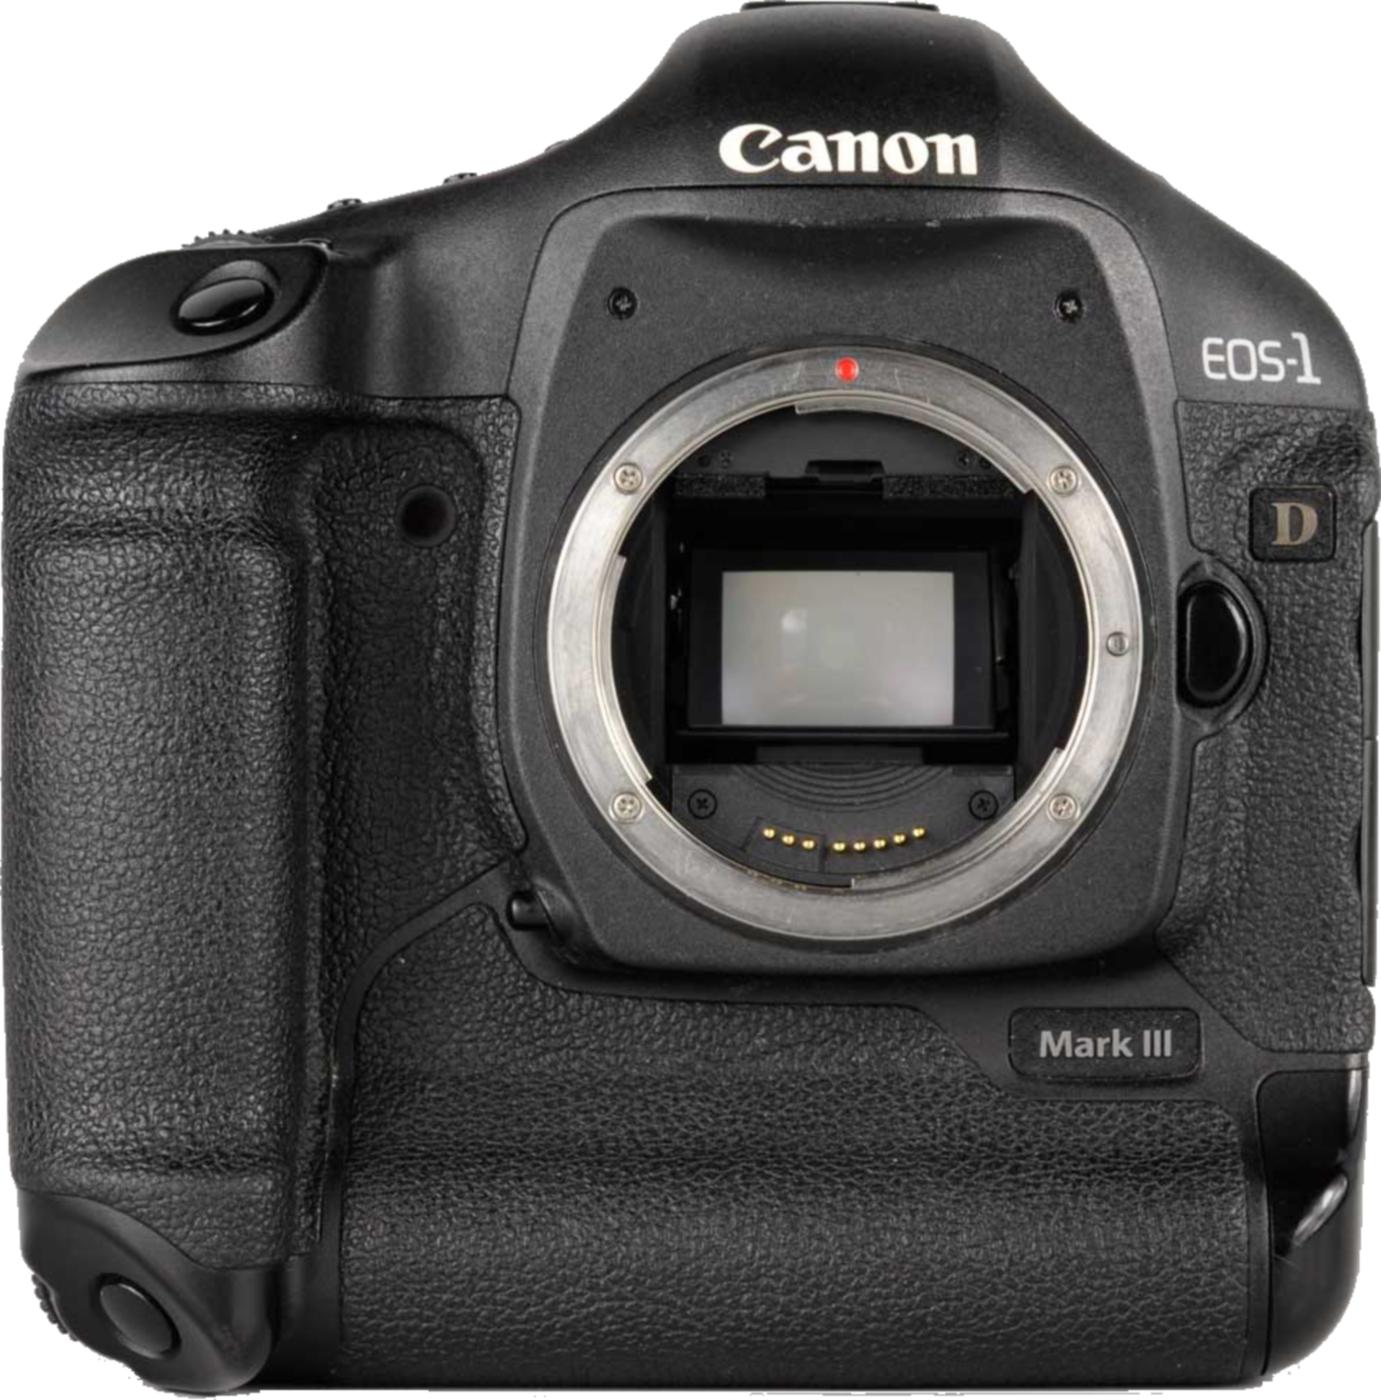 1ds mark. Canon EOS 1ds Mark lll. Canon 1d Mark III. EOS 1d Mark III. Canon EOS 1d Mark 3.